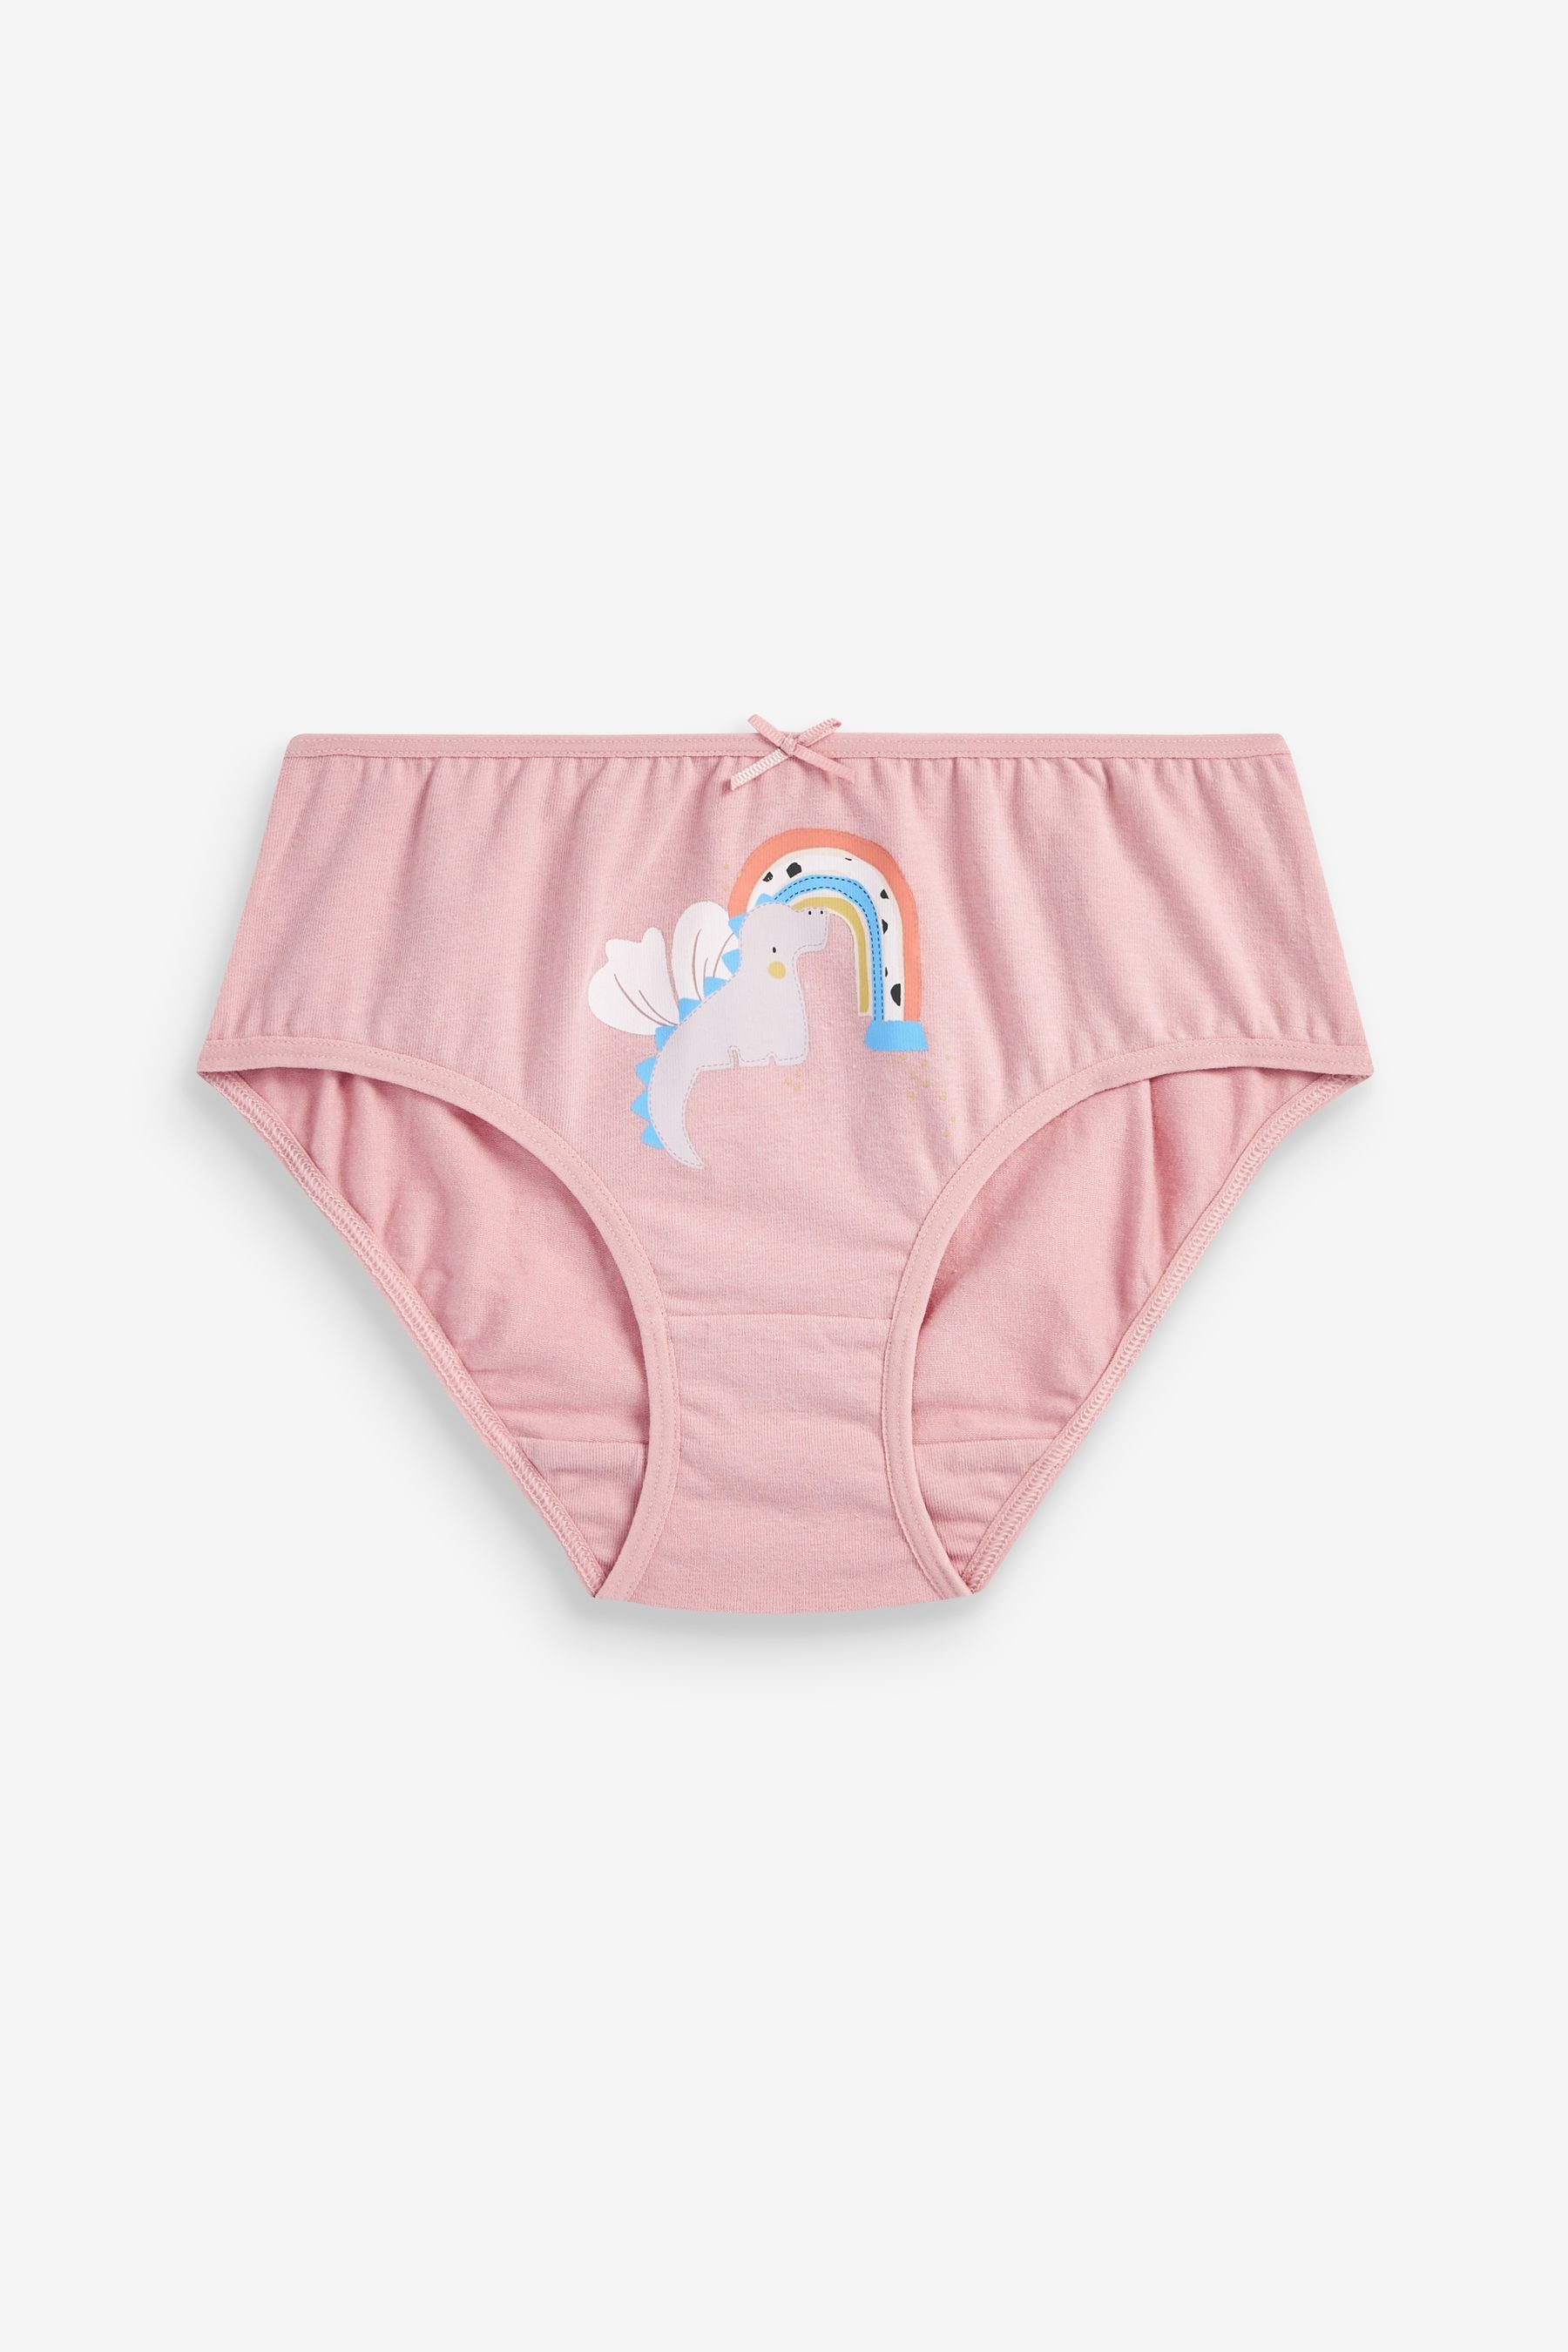 (5-St) 5er-Pack Pink/Cream Dragon Next im Slip Unterhosen